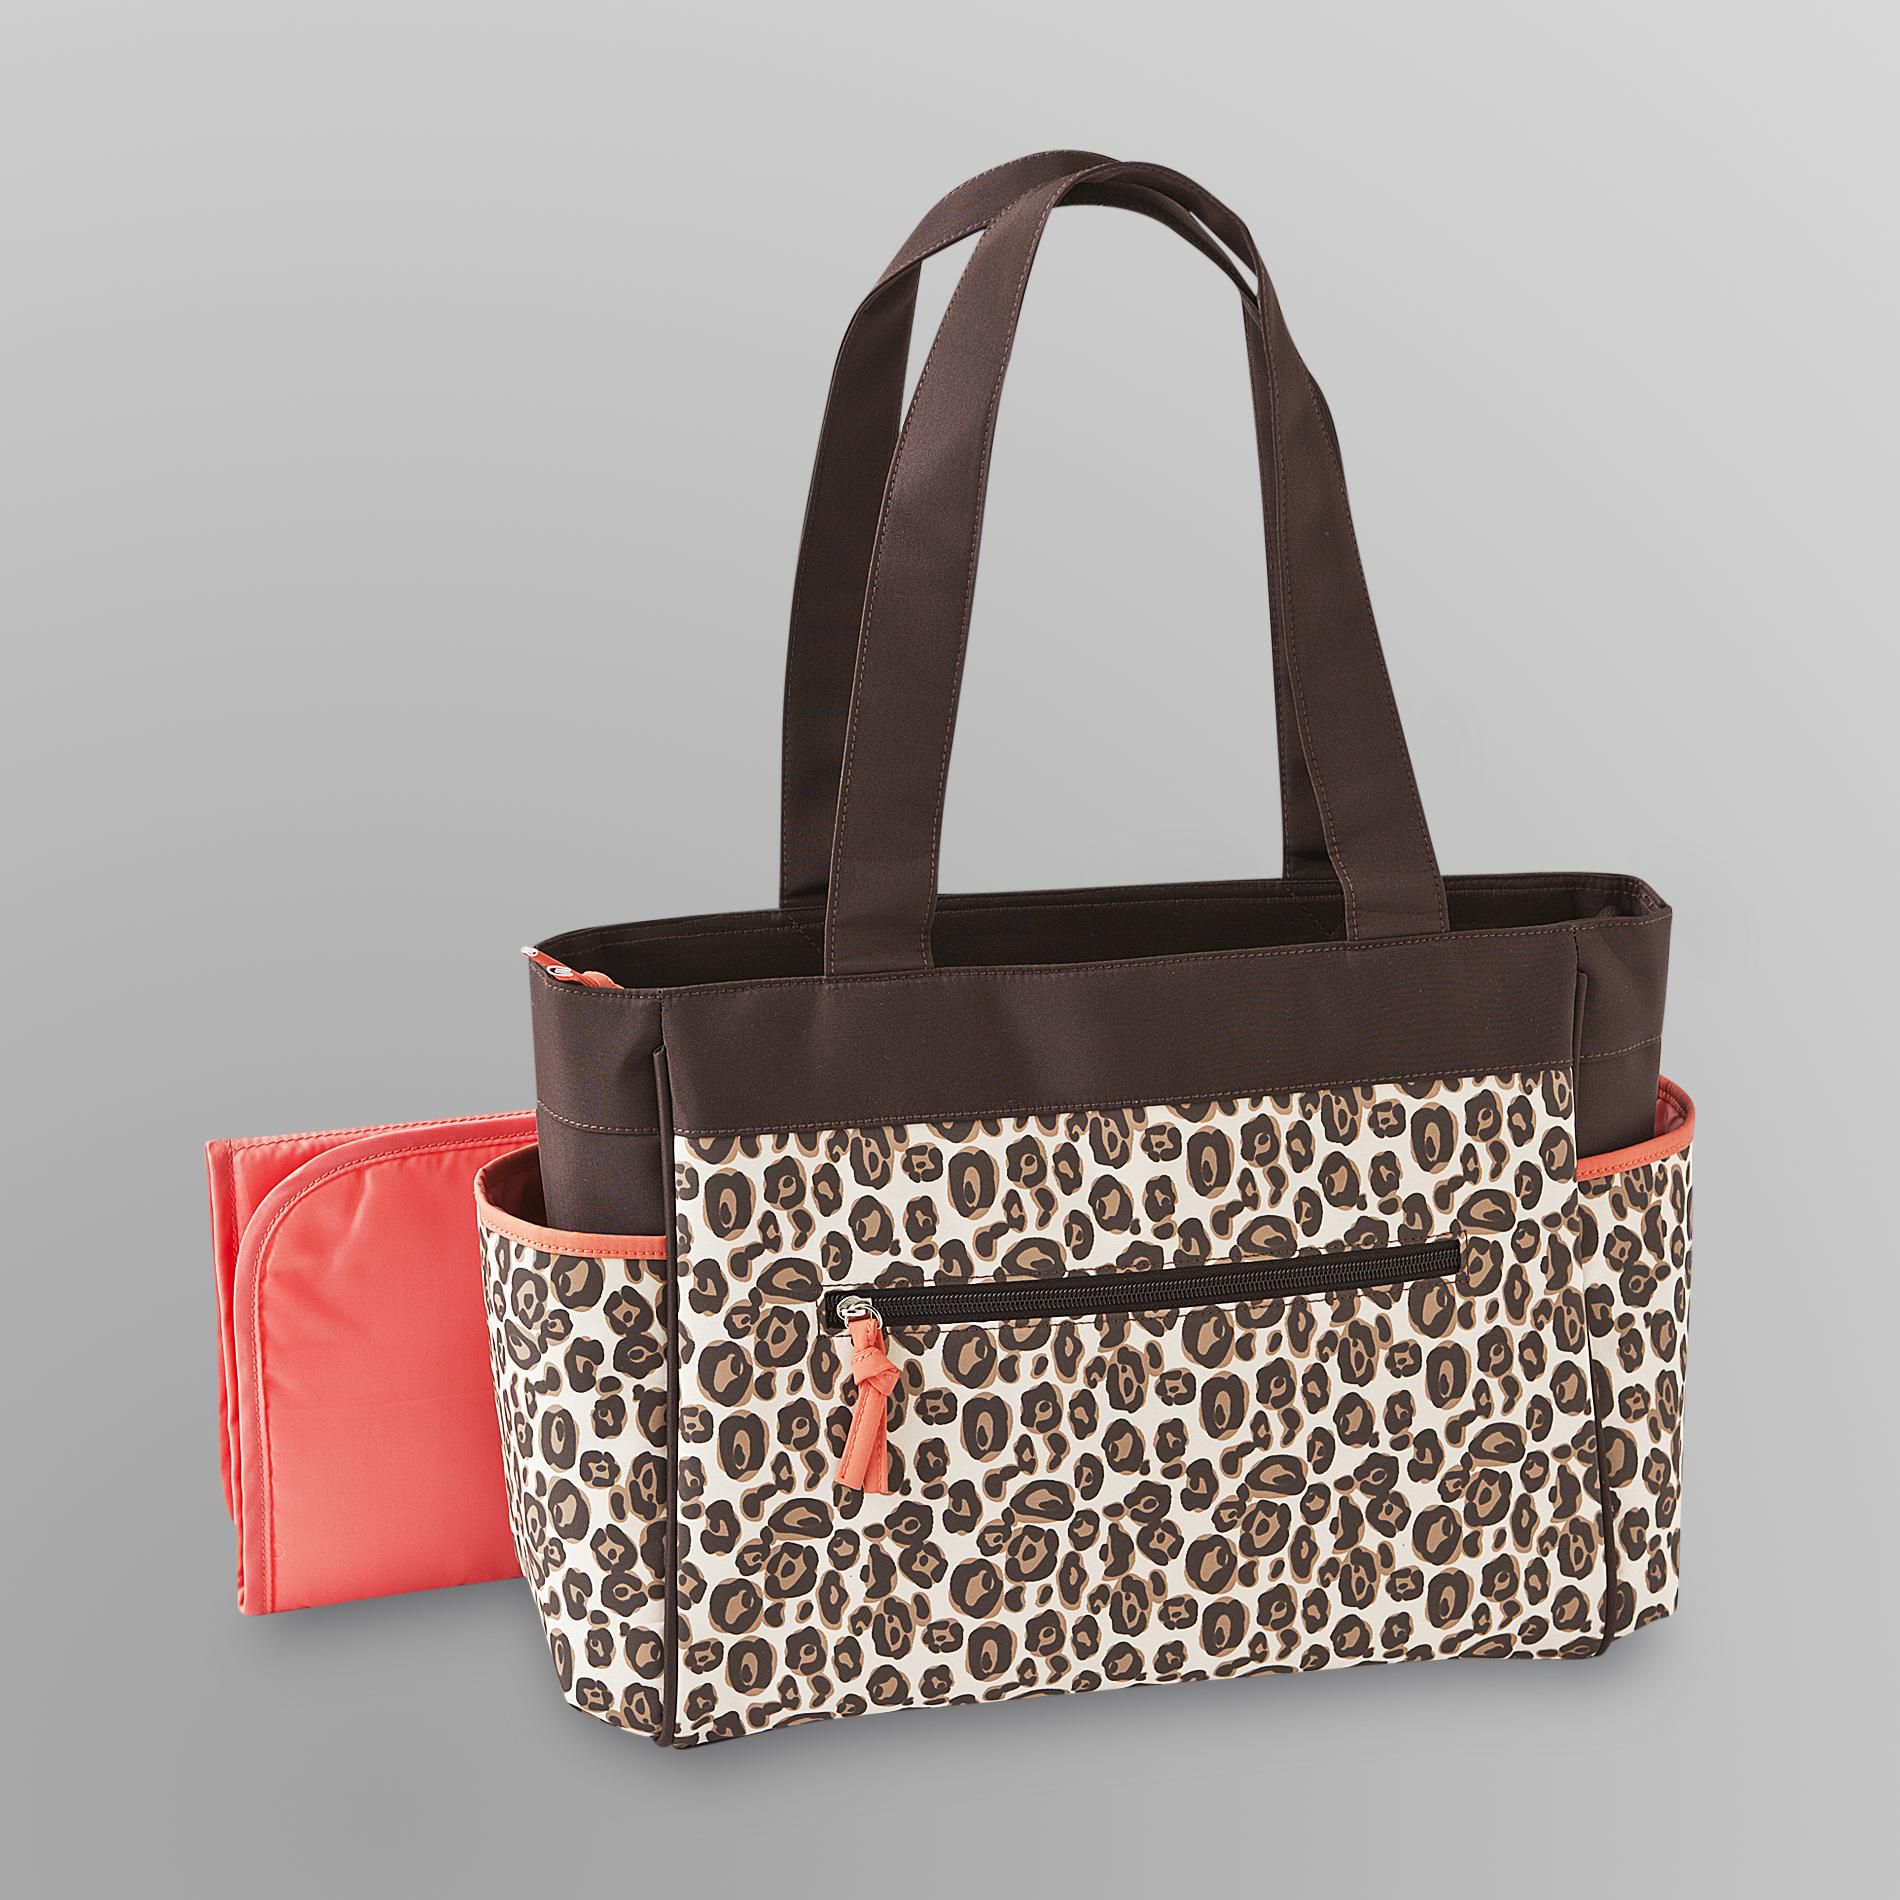 Baby Essentials 2 Pc. Diaper Bag Set - Leopard